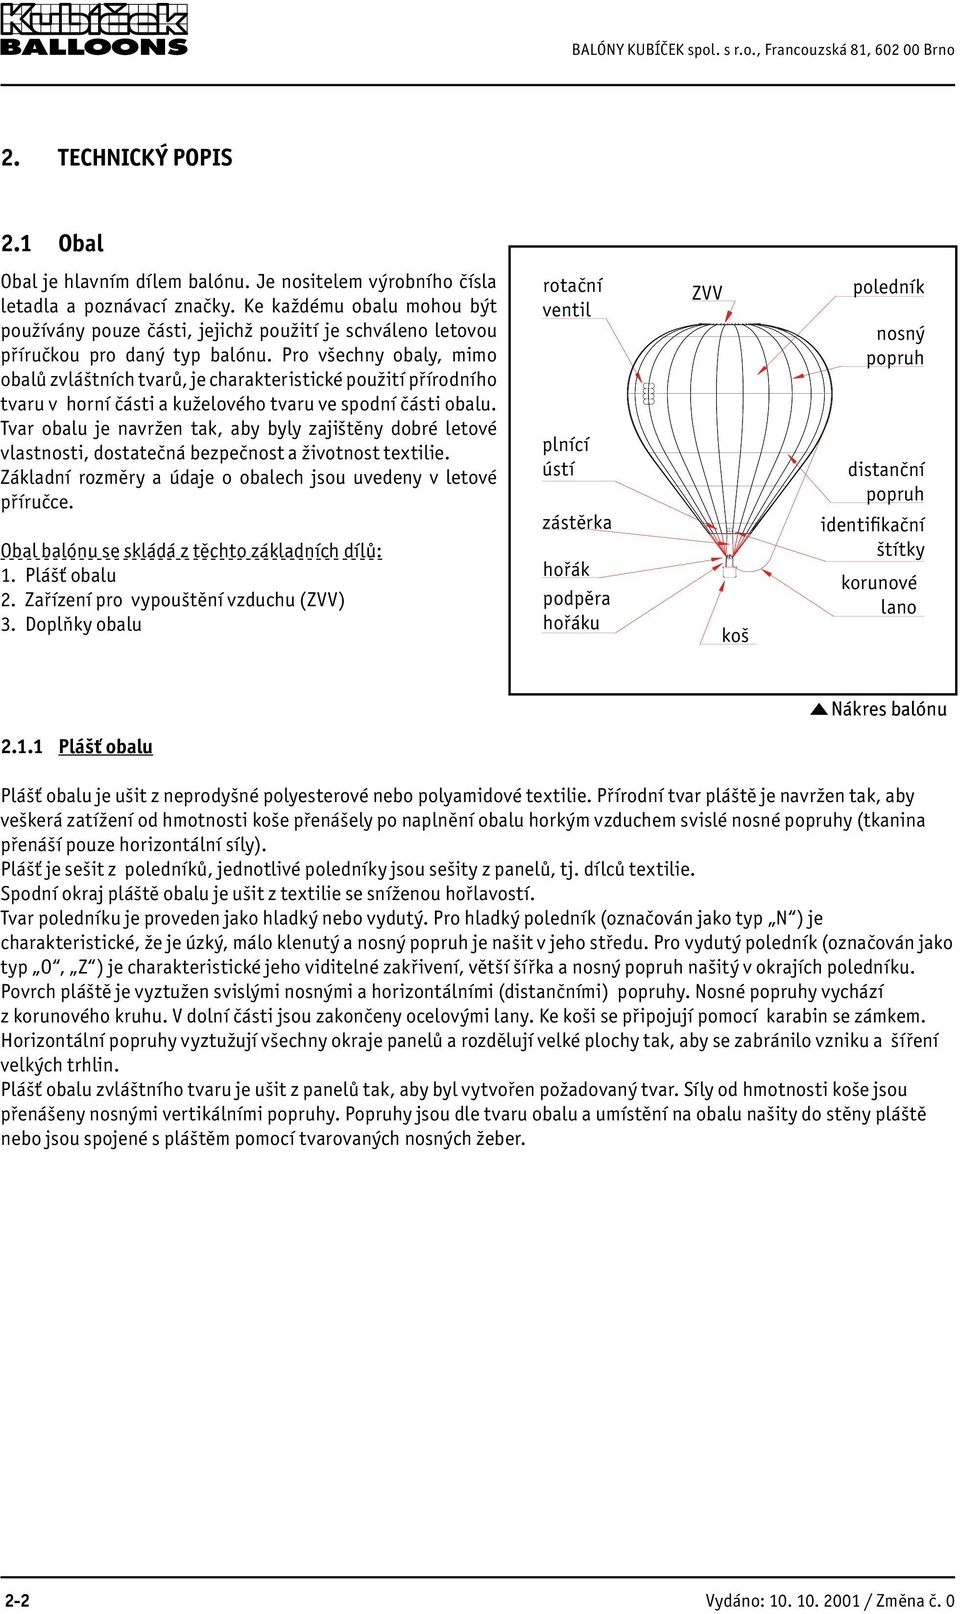 Př íručka pro údržbu horkovzdušného balónu - PDF Stažení zdarma